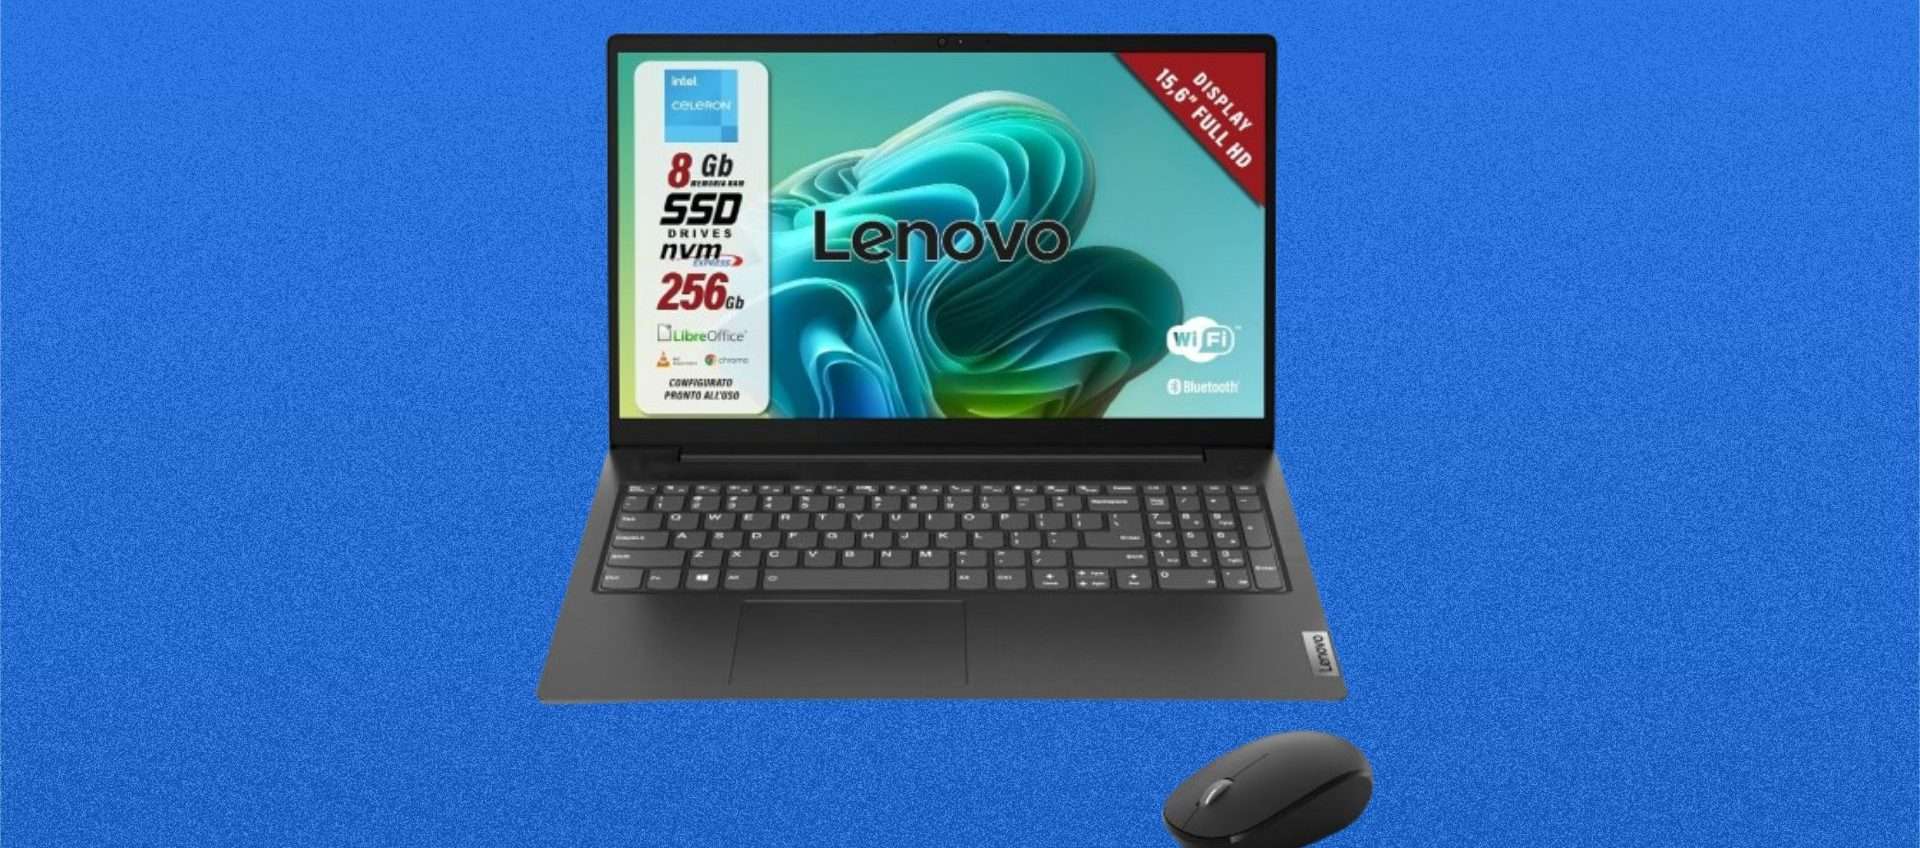 Laptop Lenovo, prezzo in frantumi: su Amazon lo paghi solo 270€